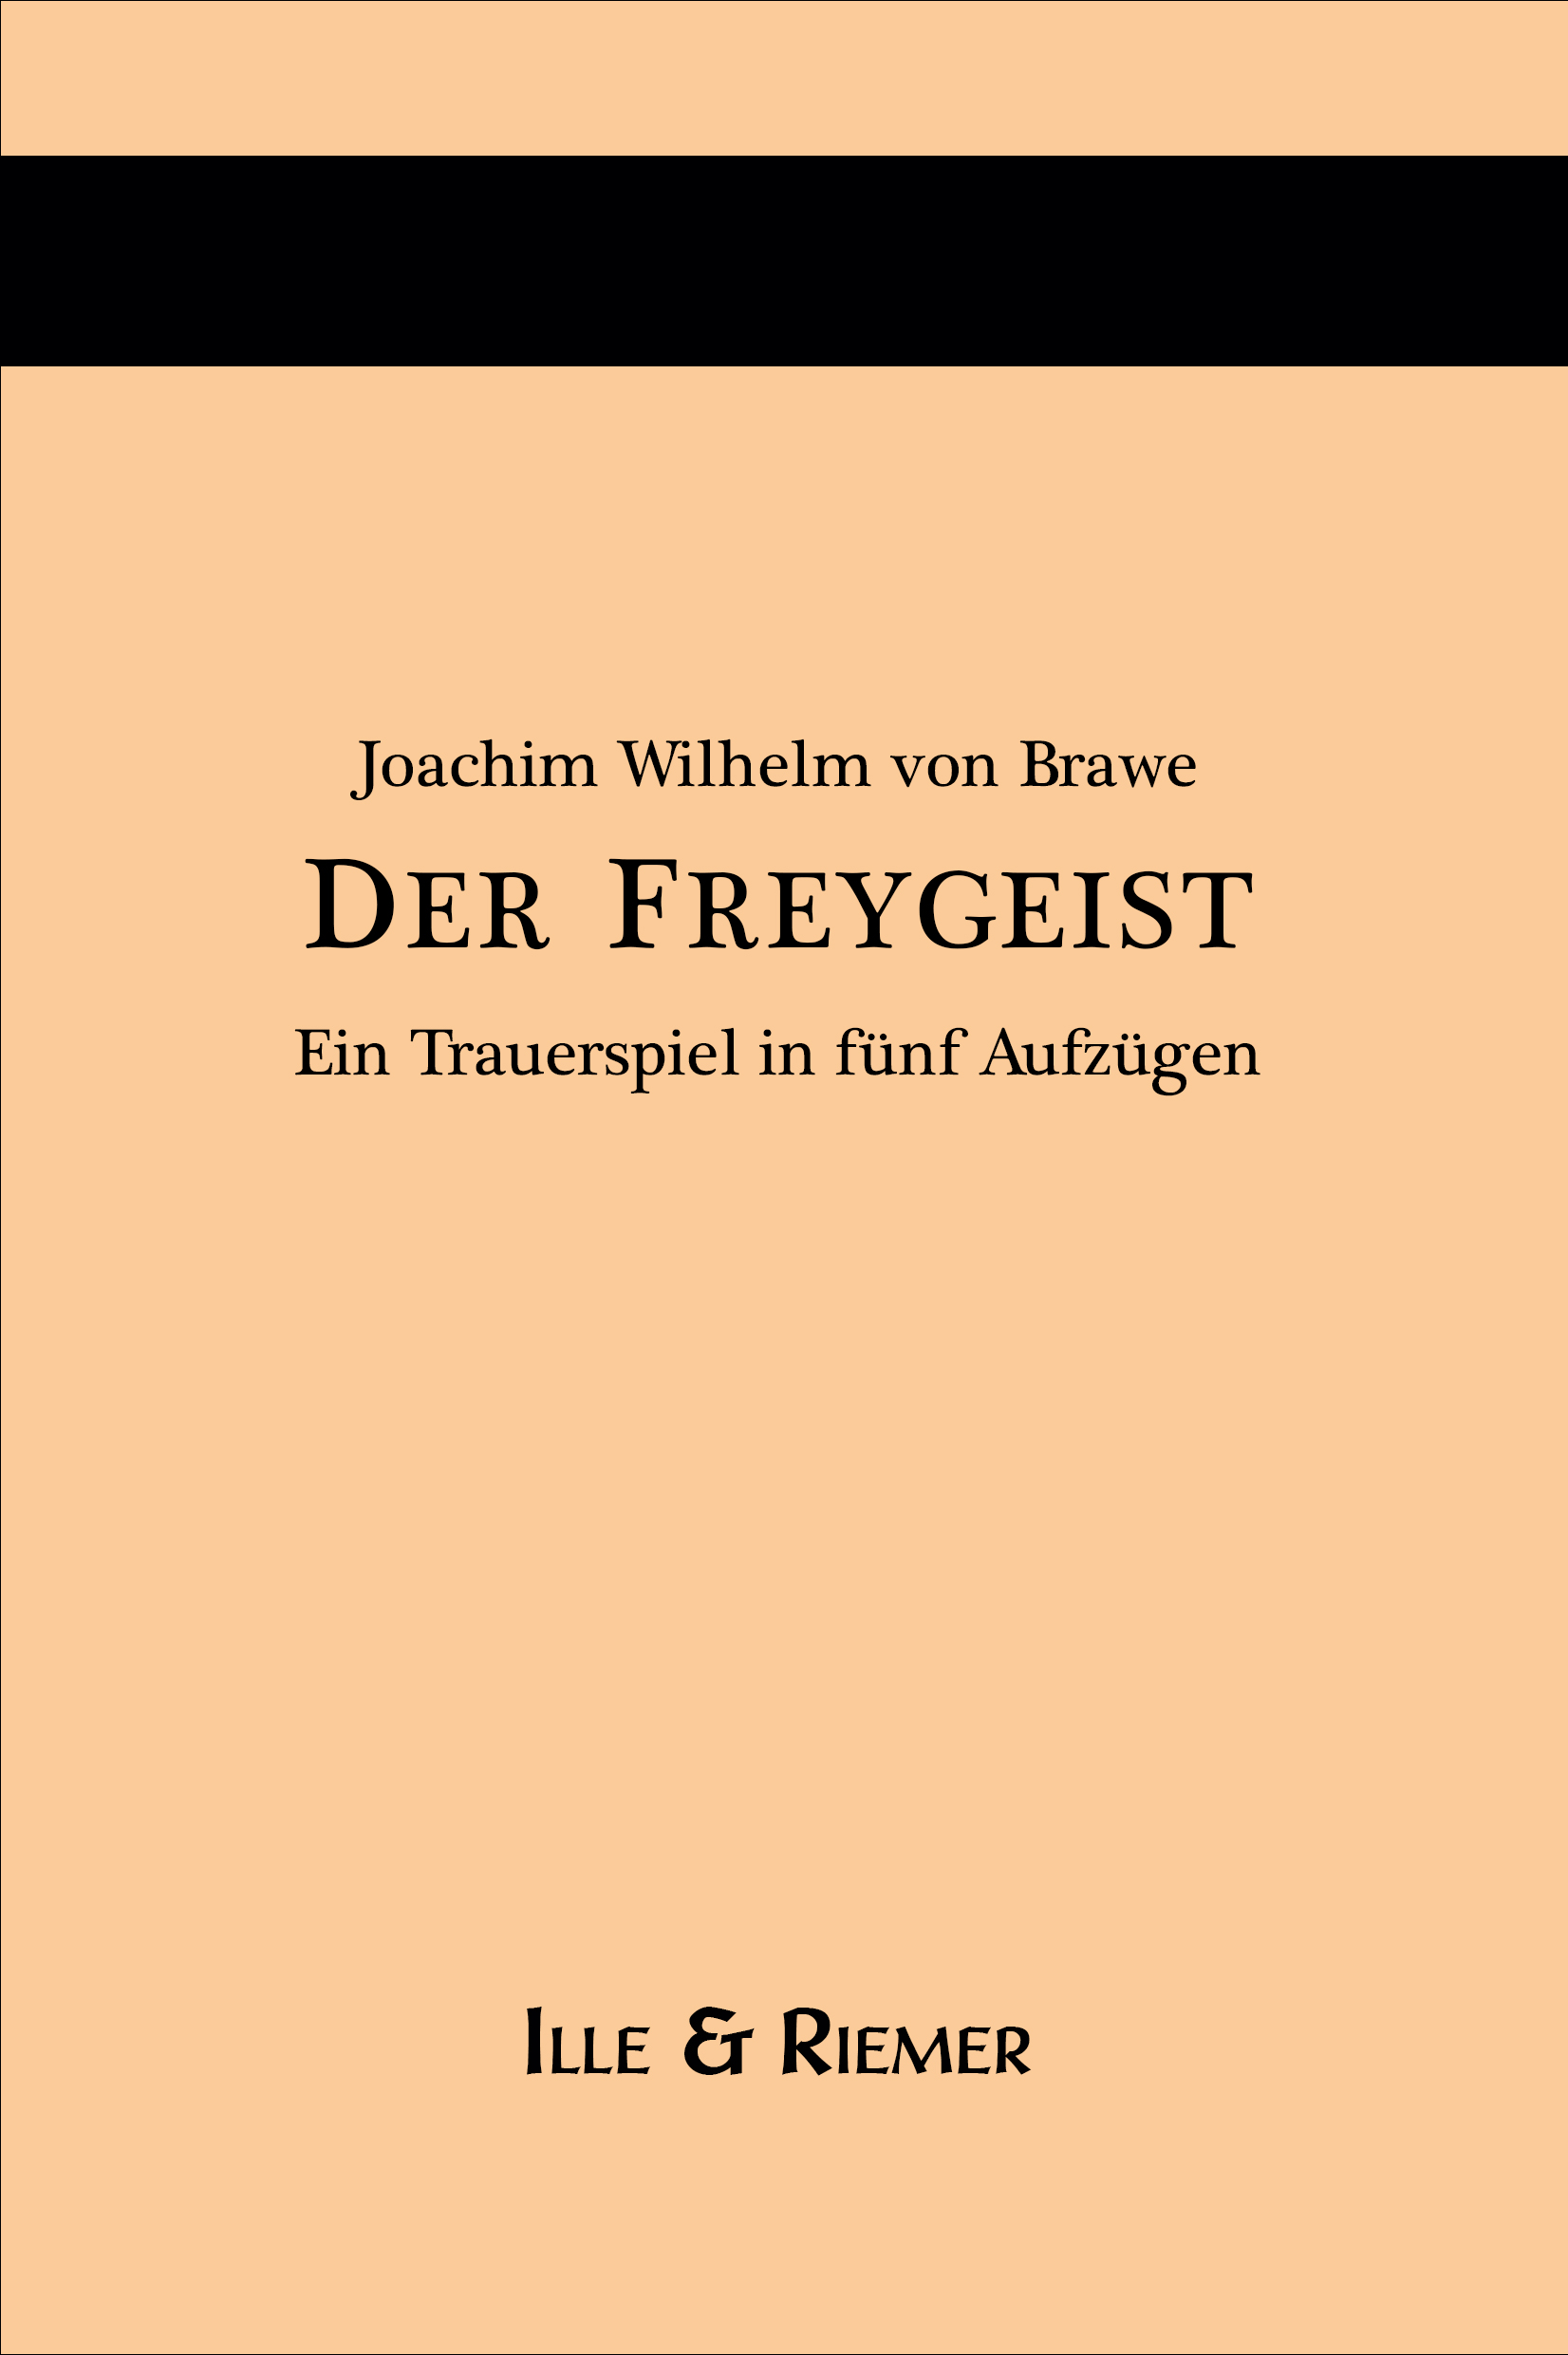 Der Freygeist (1758)